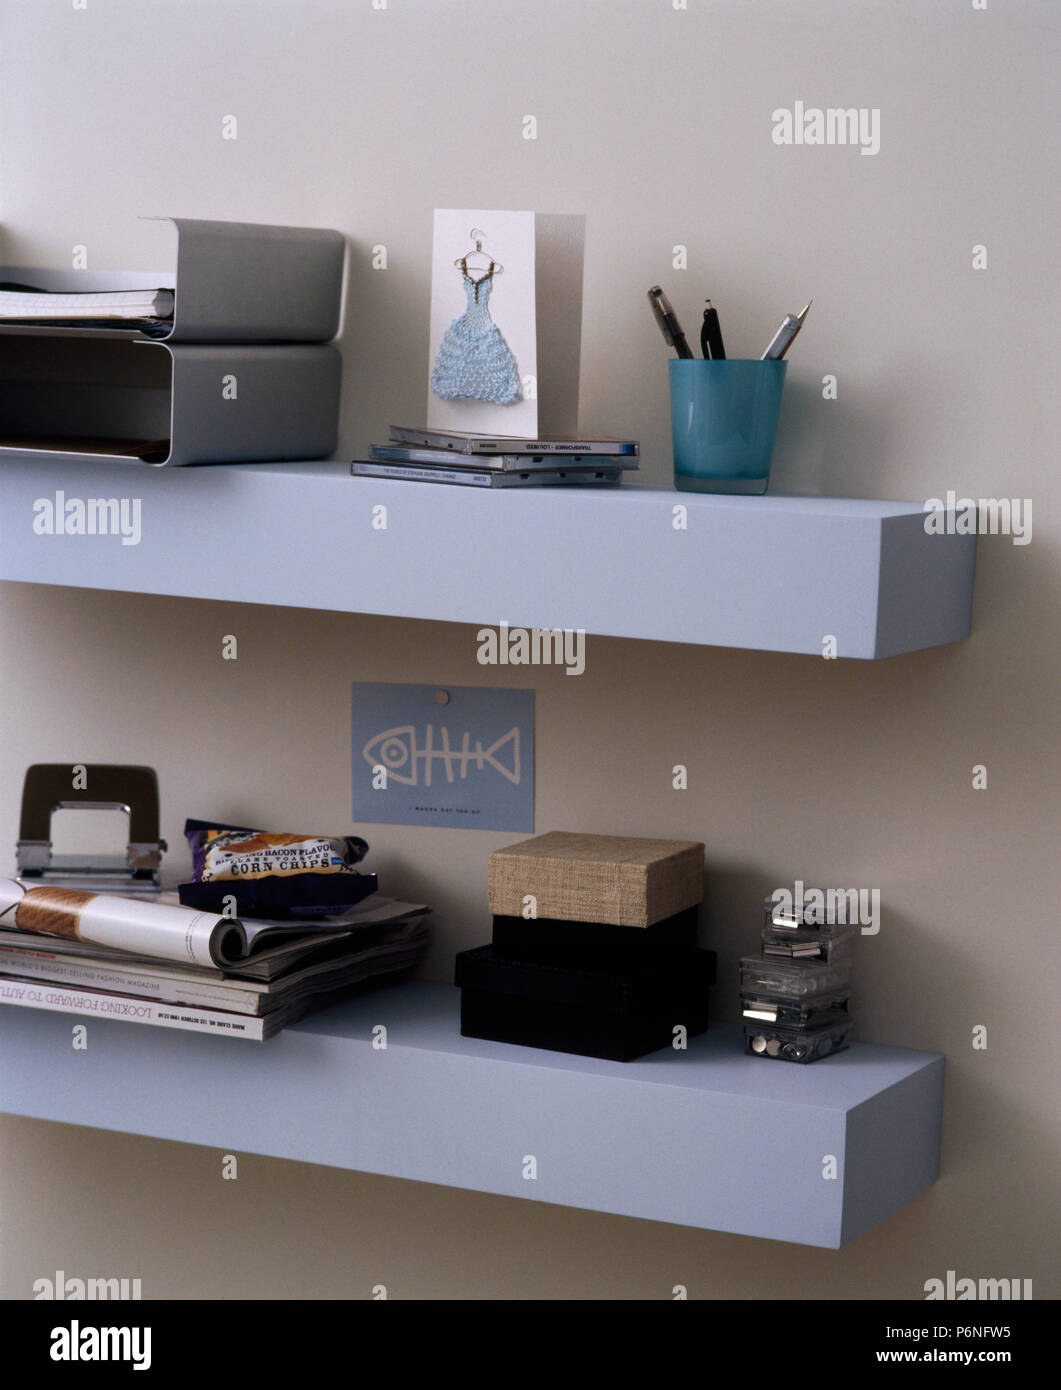 Plateaux métal dossier papeterie et équipements sur de simples étagères bleu pâle Banque D'Images